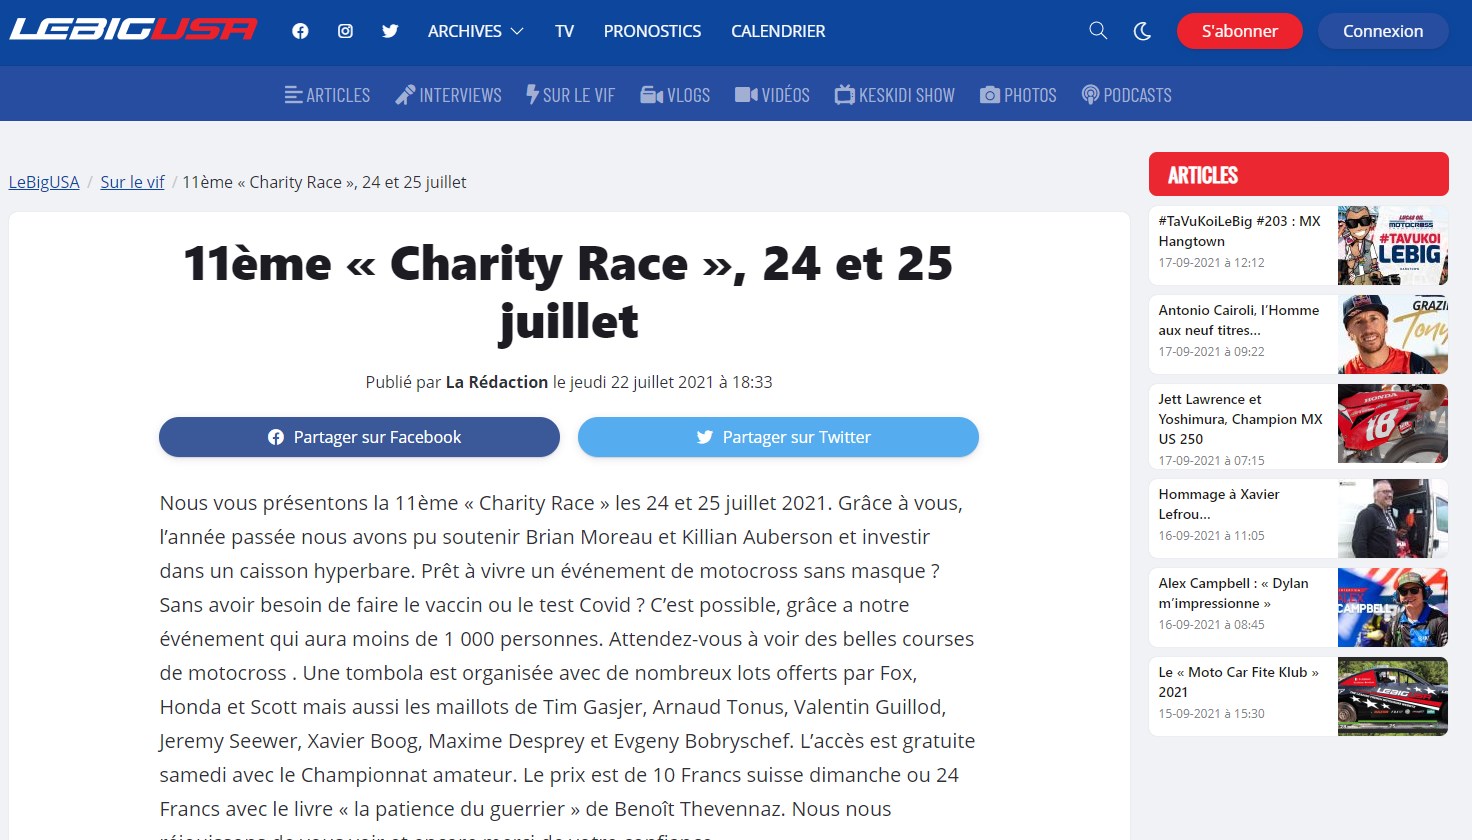 LeBigUSA - 11ème « Charity Race », 24 et 25 juillet